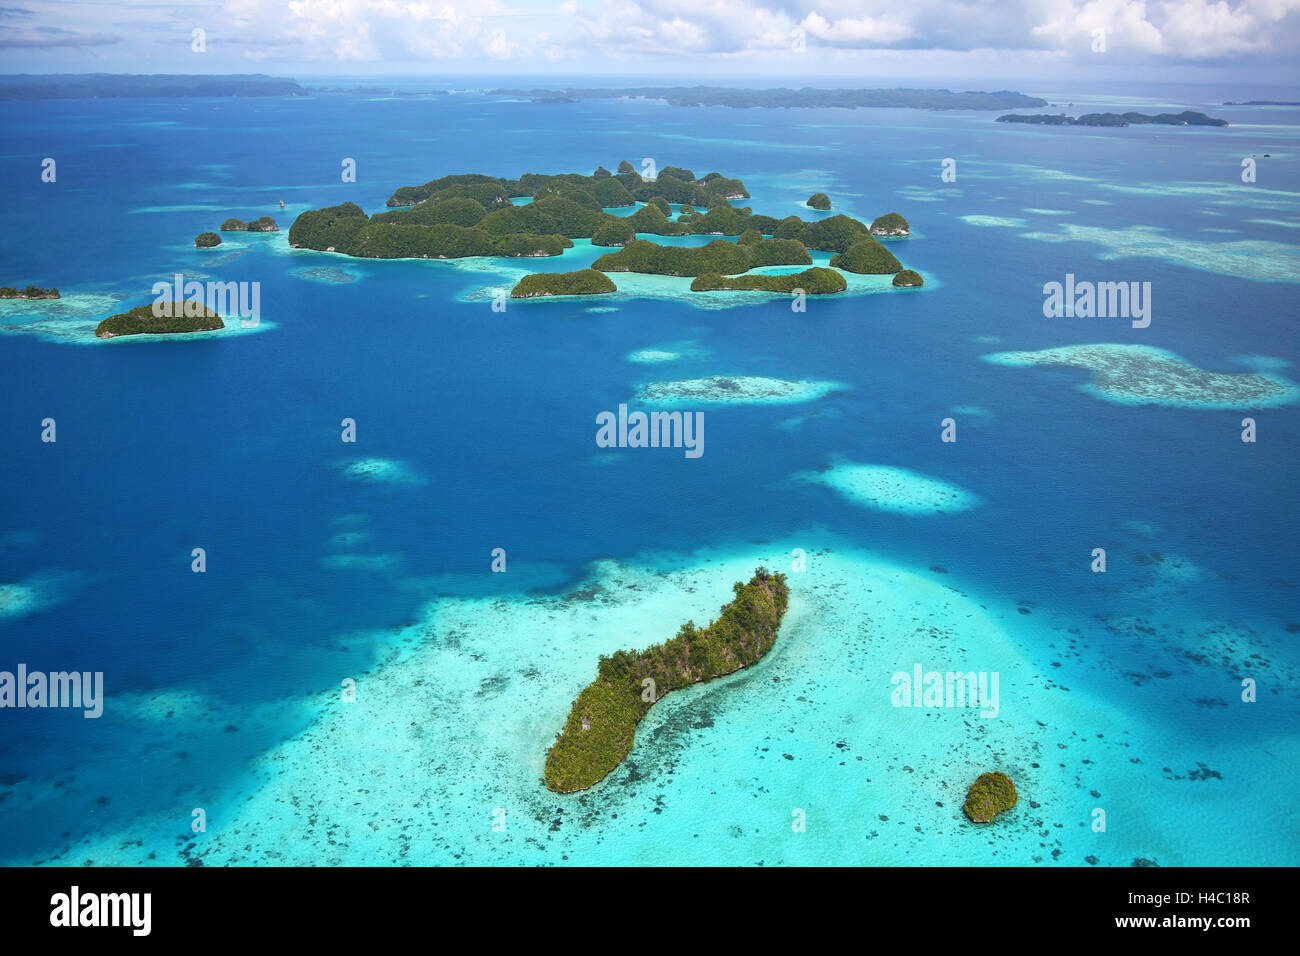 Vista aérea del archipiélago de 70 islas, República de Palau, Micronesia, Océano Pacífico Foto de stock